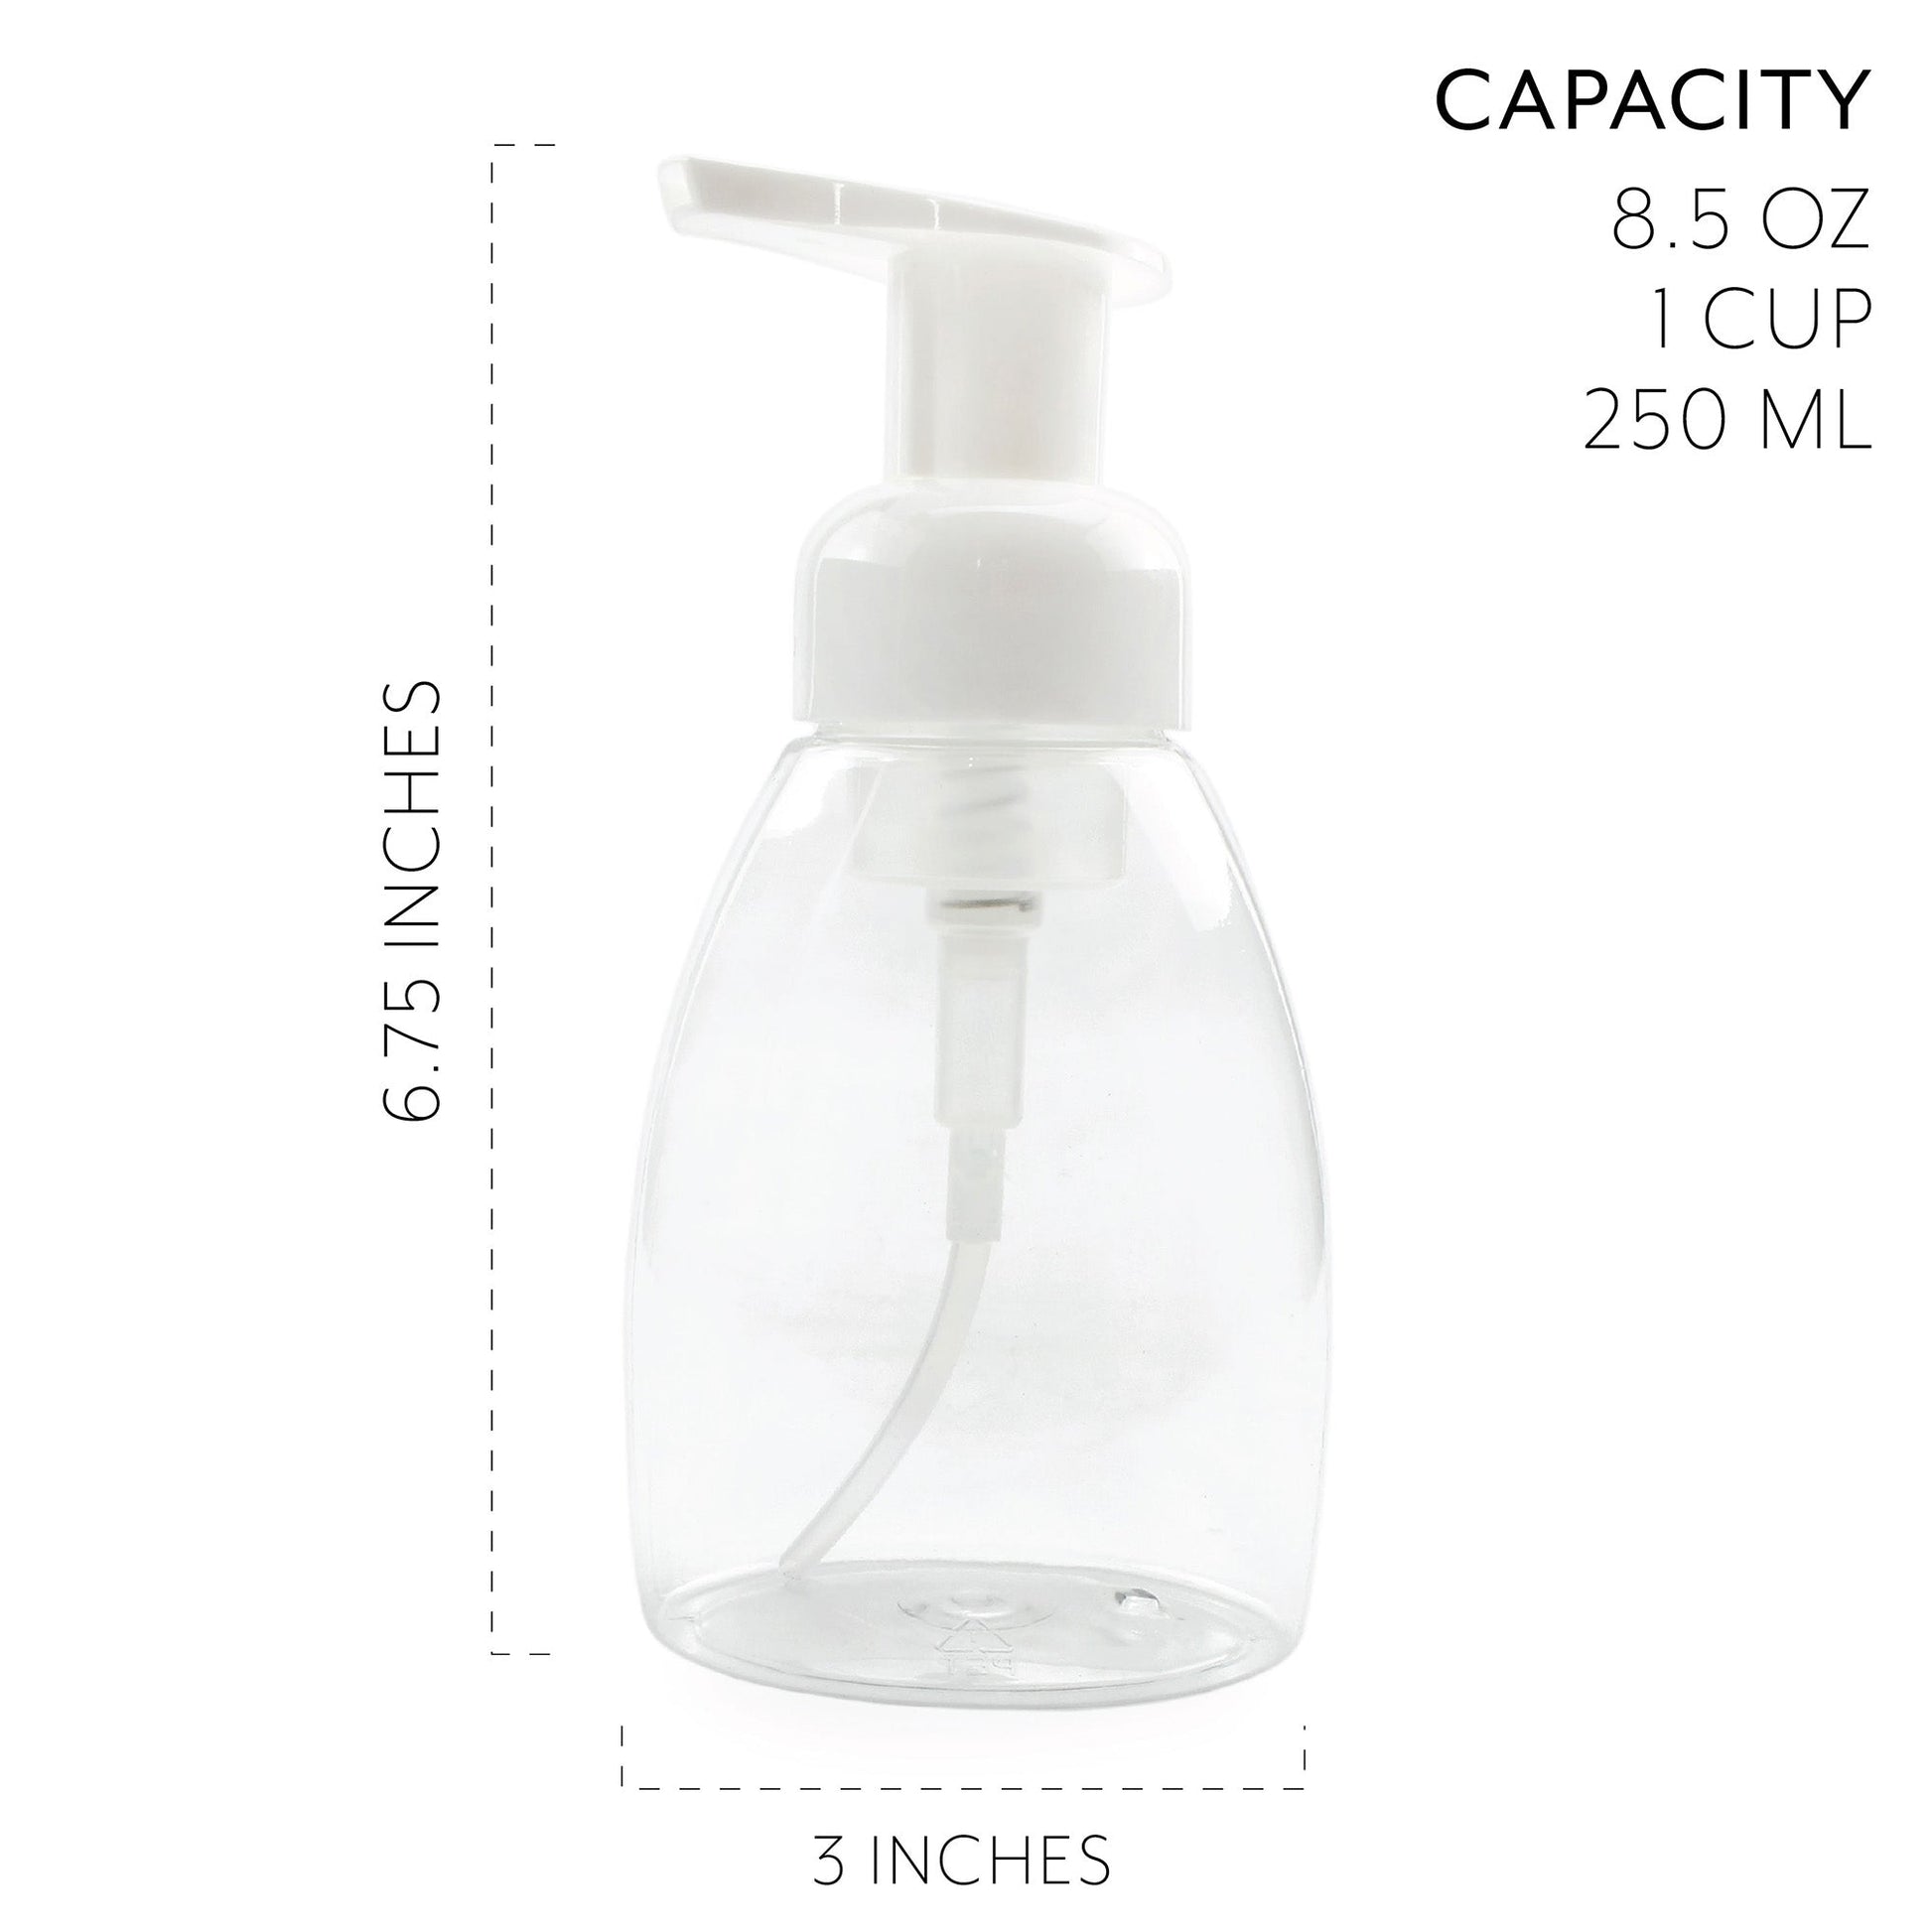 Foaming Soap Dispensers 8.5oz / 250ml Capacity (8pk) - sh1270cb0foam